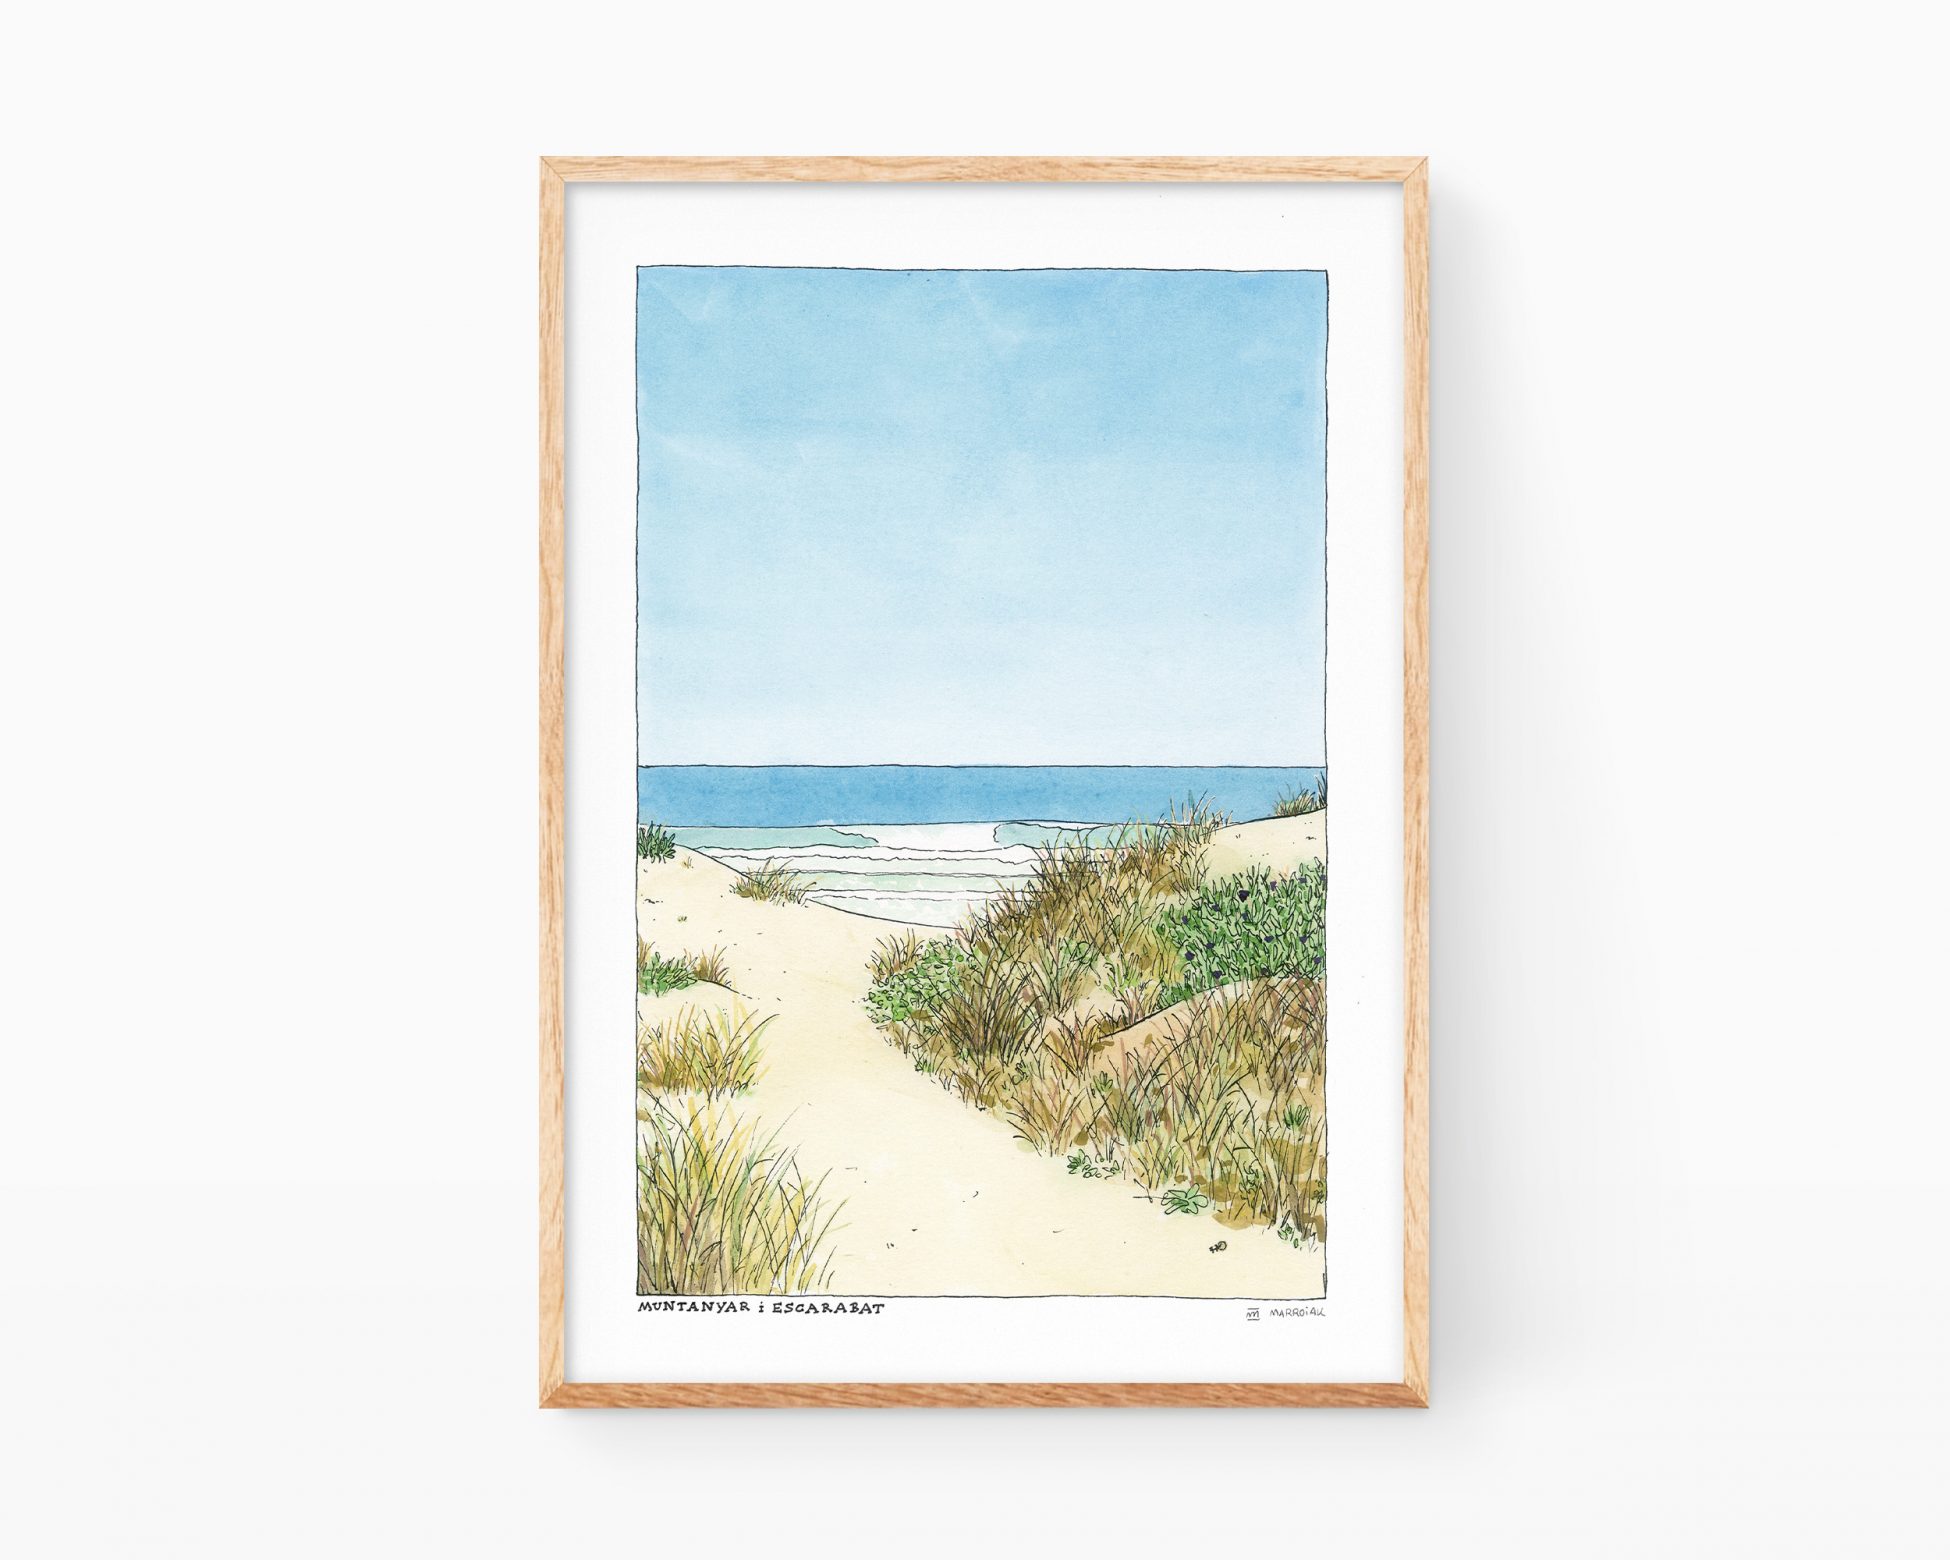 Cuadro decorativo para enmarcar con una ilustración en acuarela de una playa, unas dunas y un escarabajo. La lámina (print) también incluye unas olas, el cielo y arena. Fotos y dibujos de Oliva playa y pueblo.